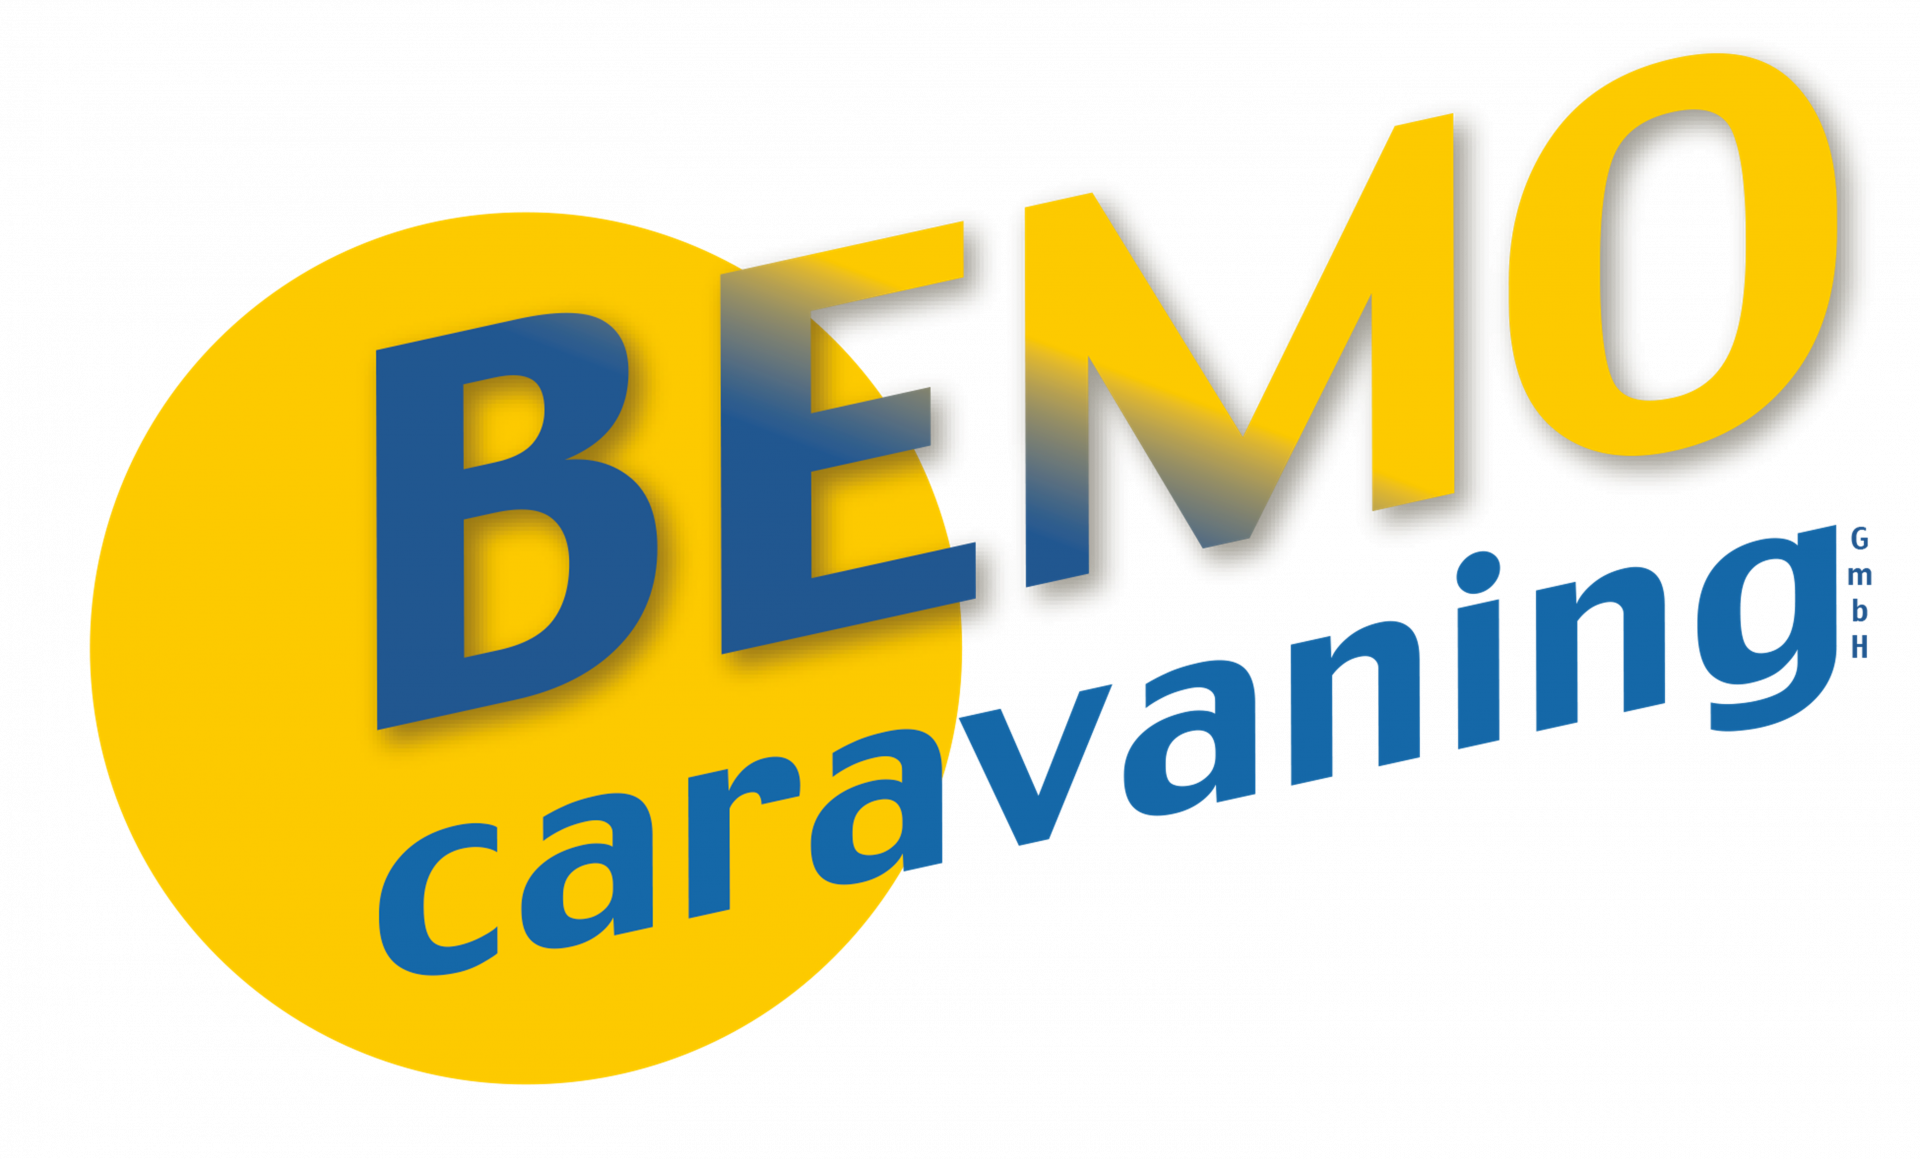 (c) Bemo-caravaning.de